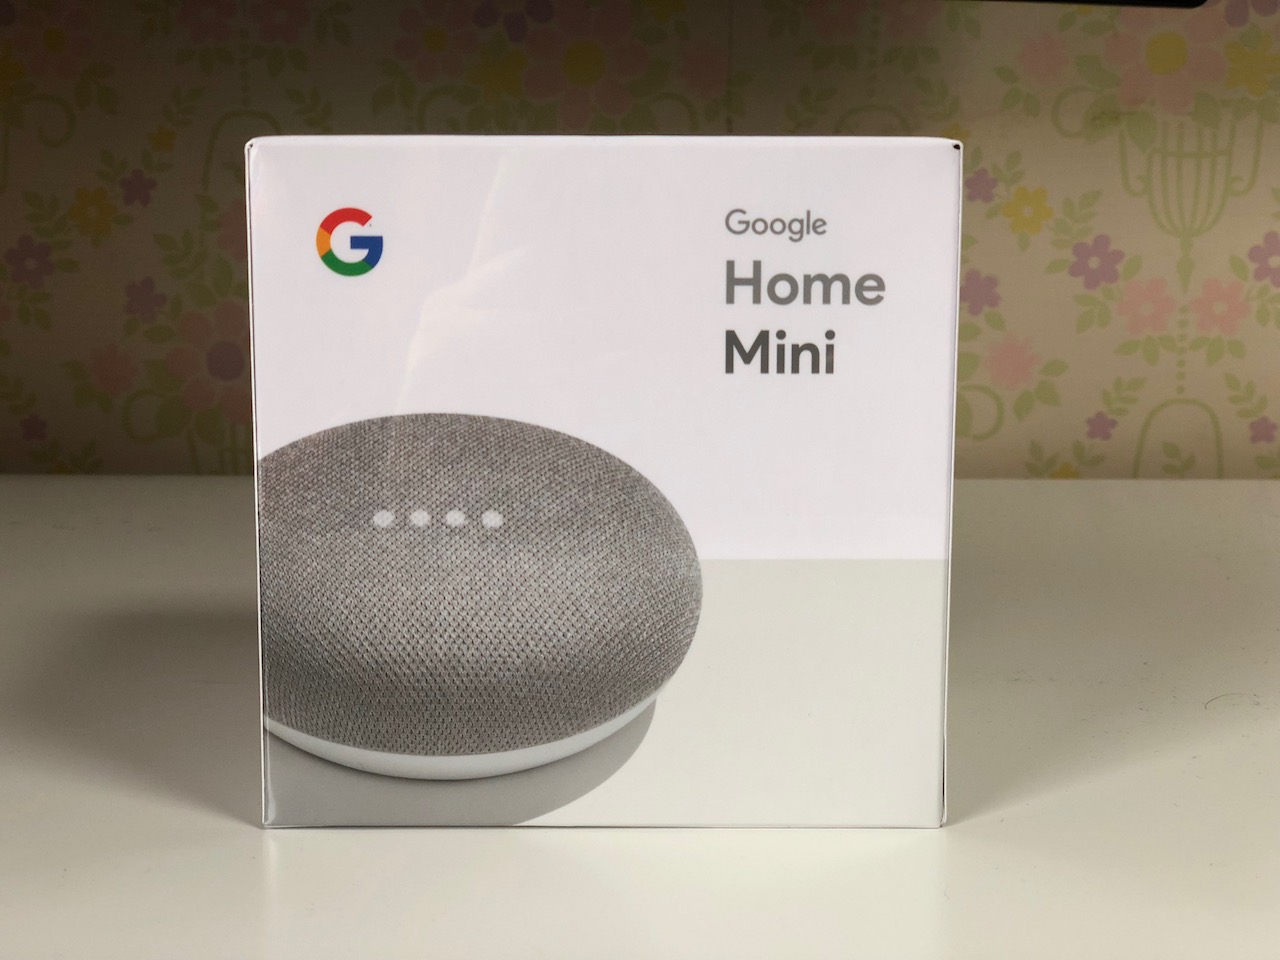 Google Home Mini（グーグルホームミニ）は何に使えばいいのだ？